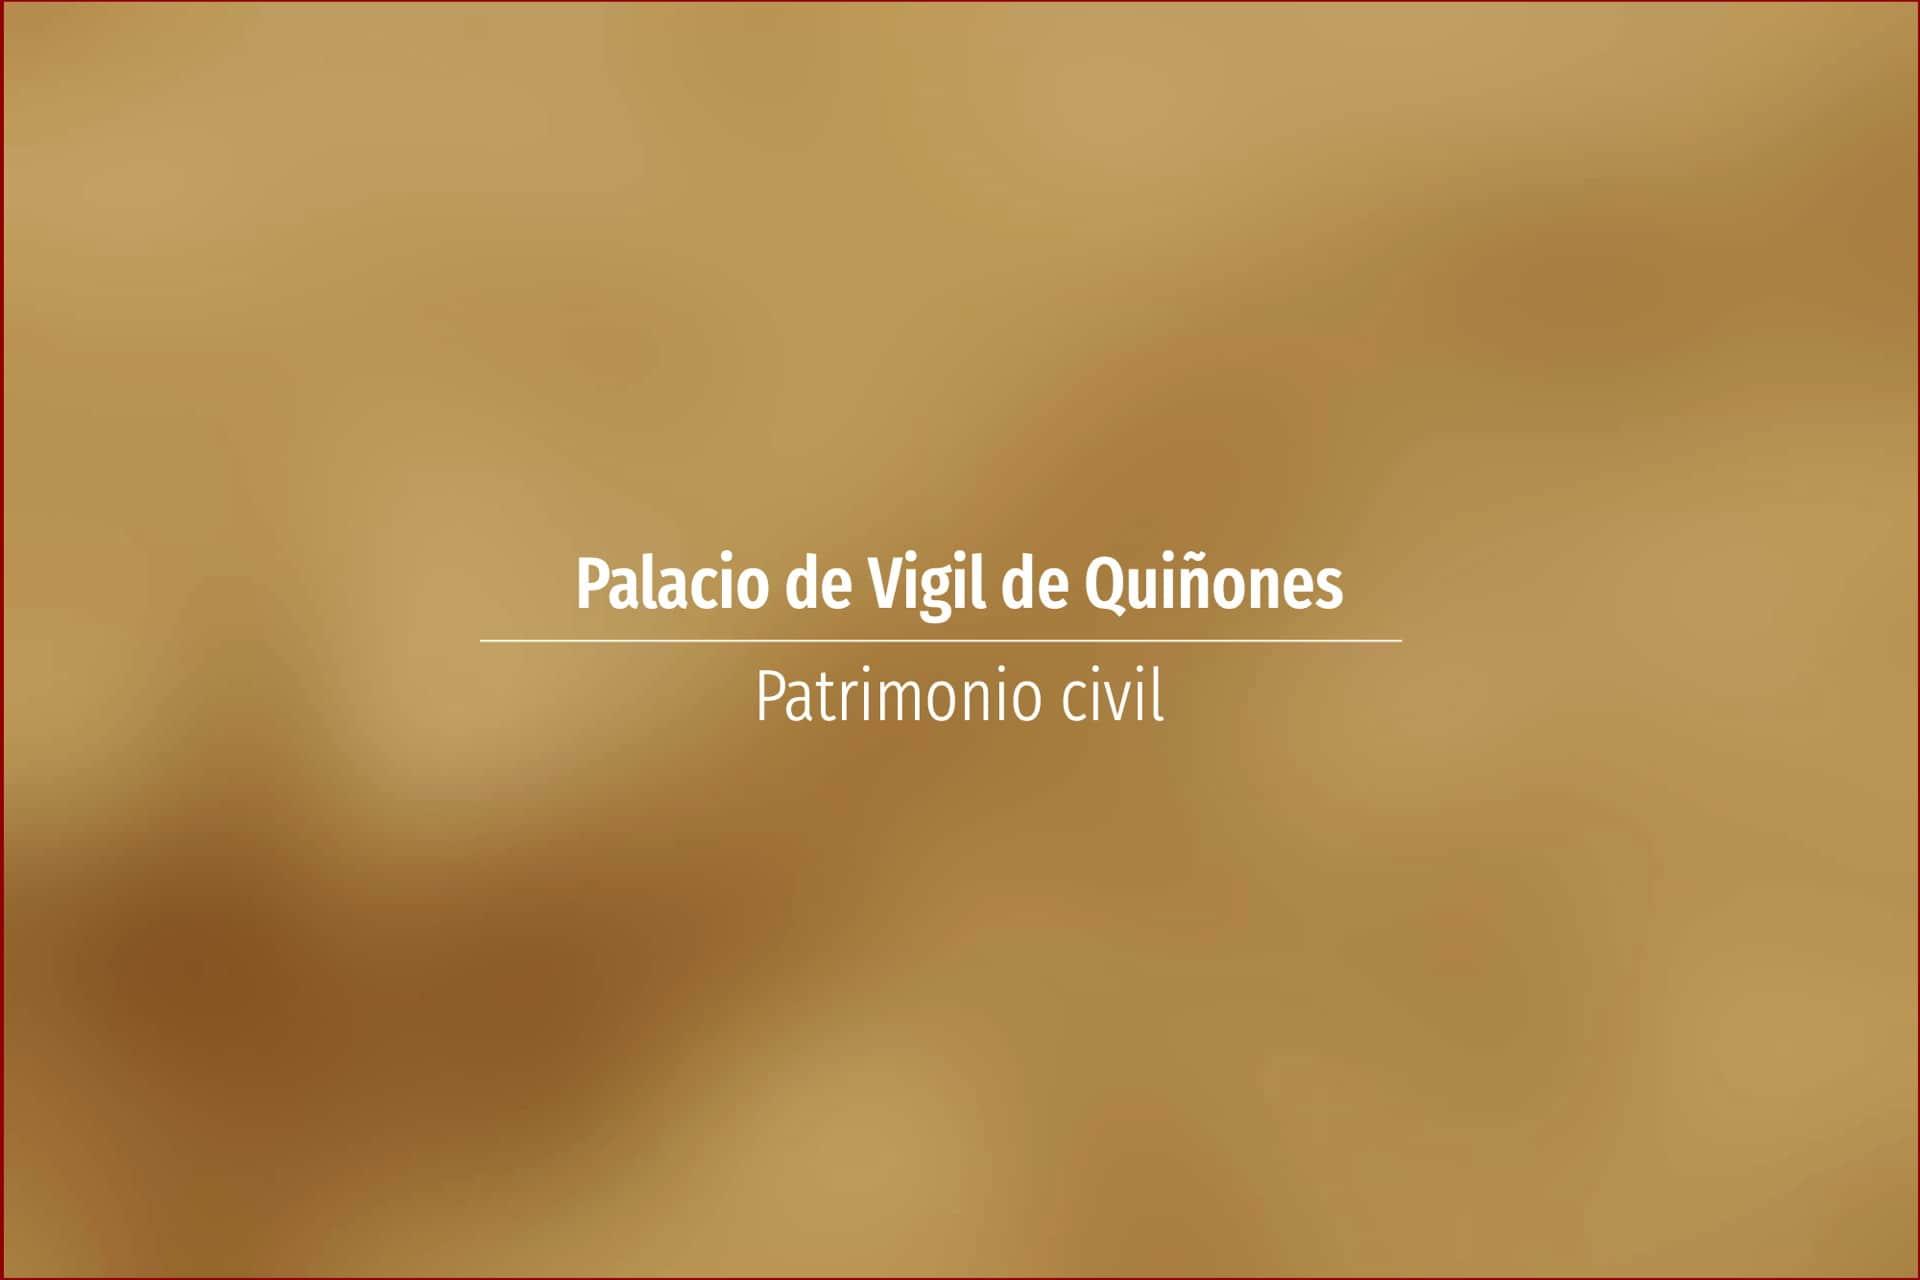 Palacio de Vigil de Quiñones